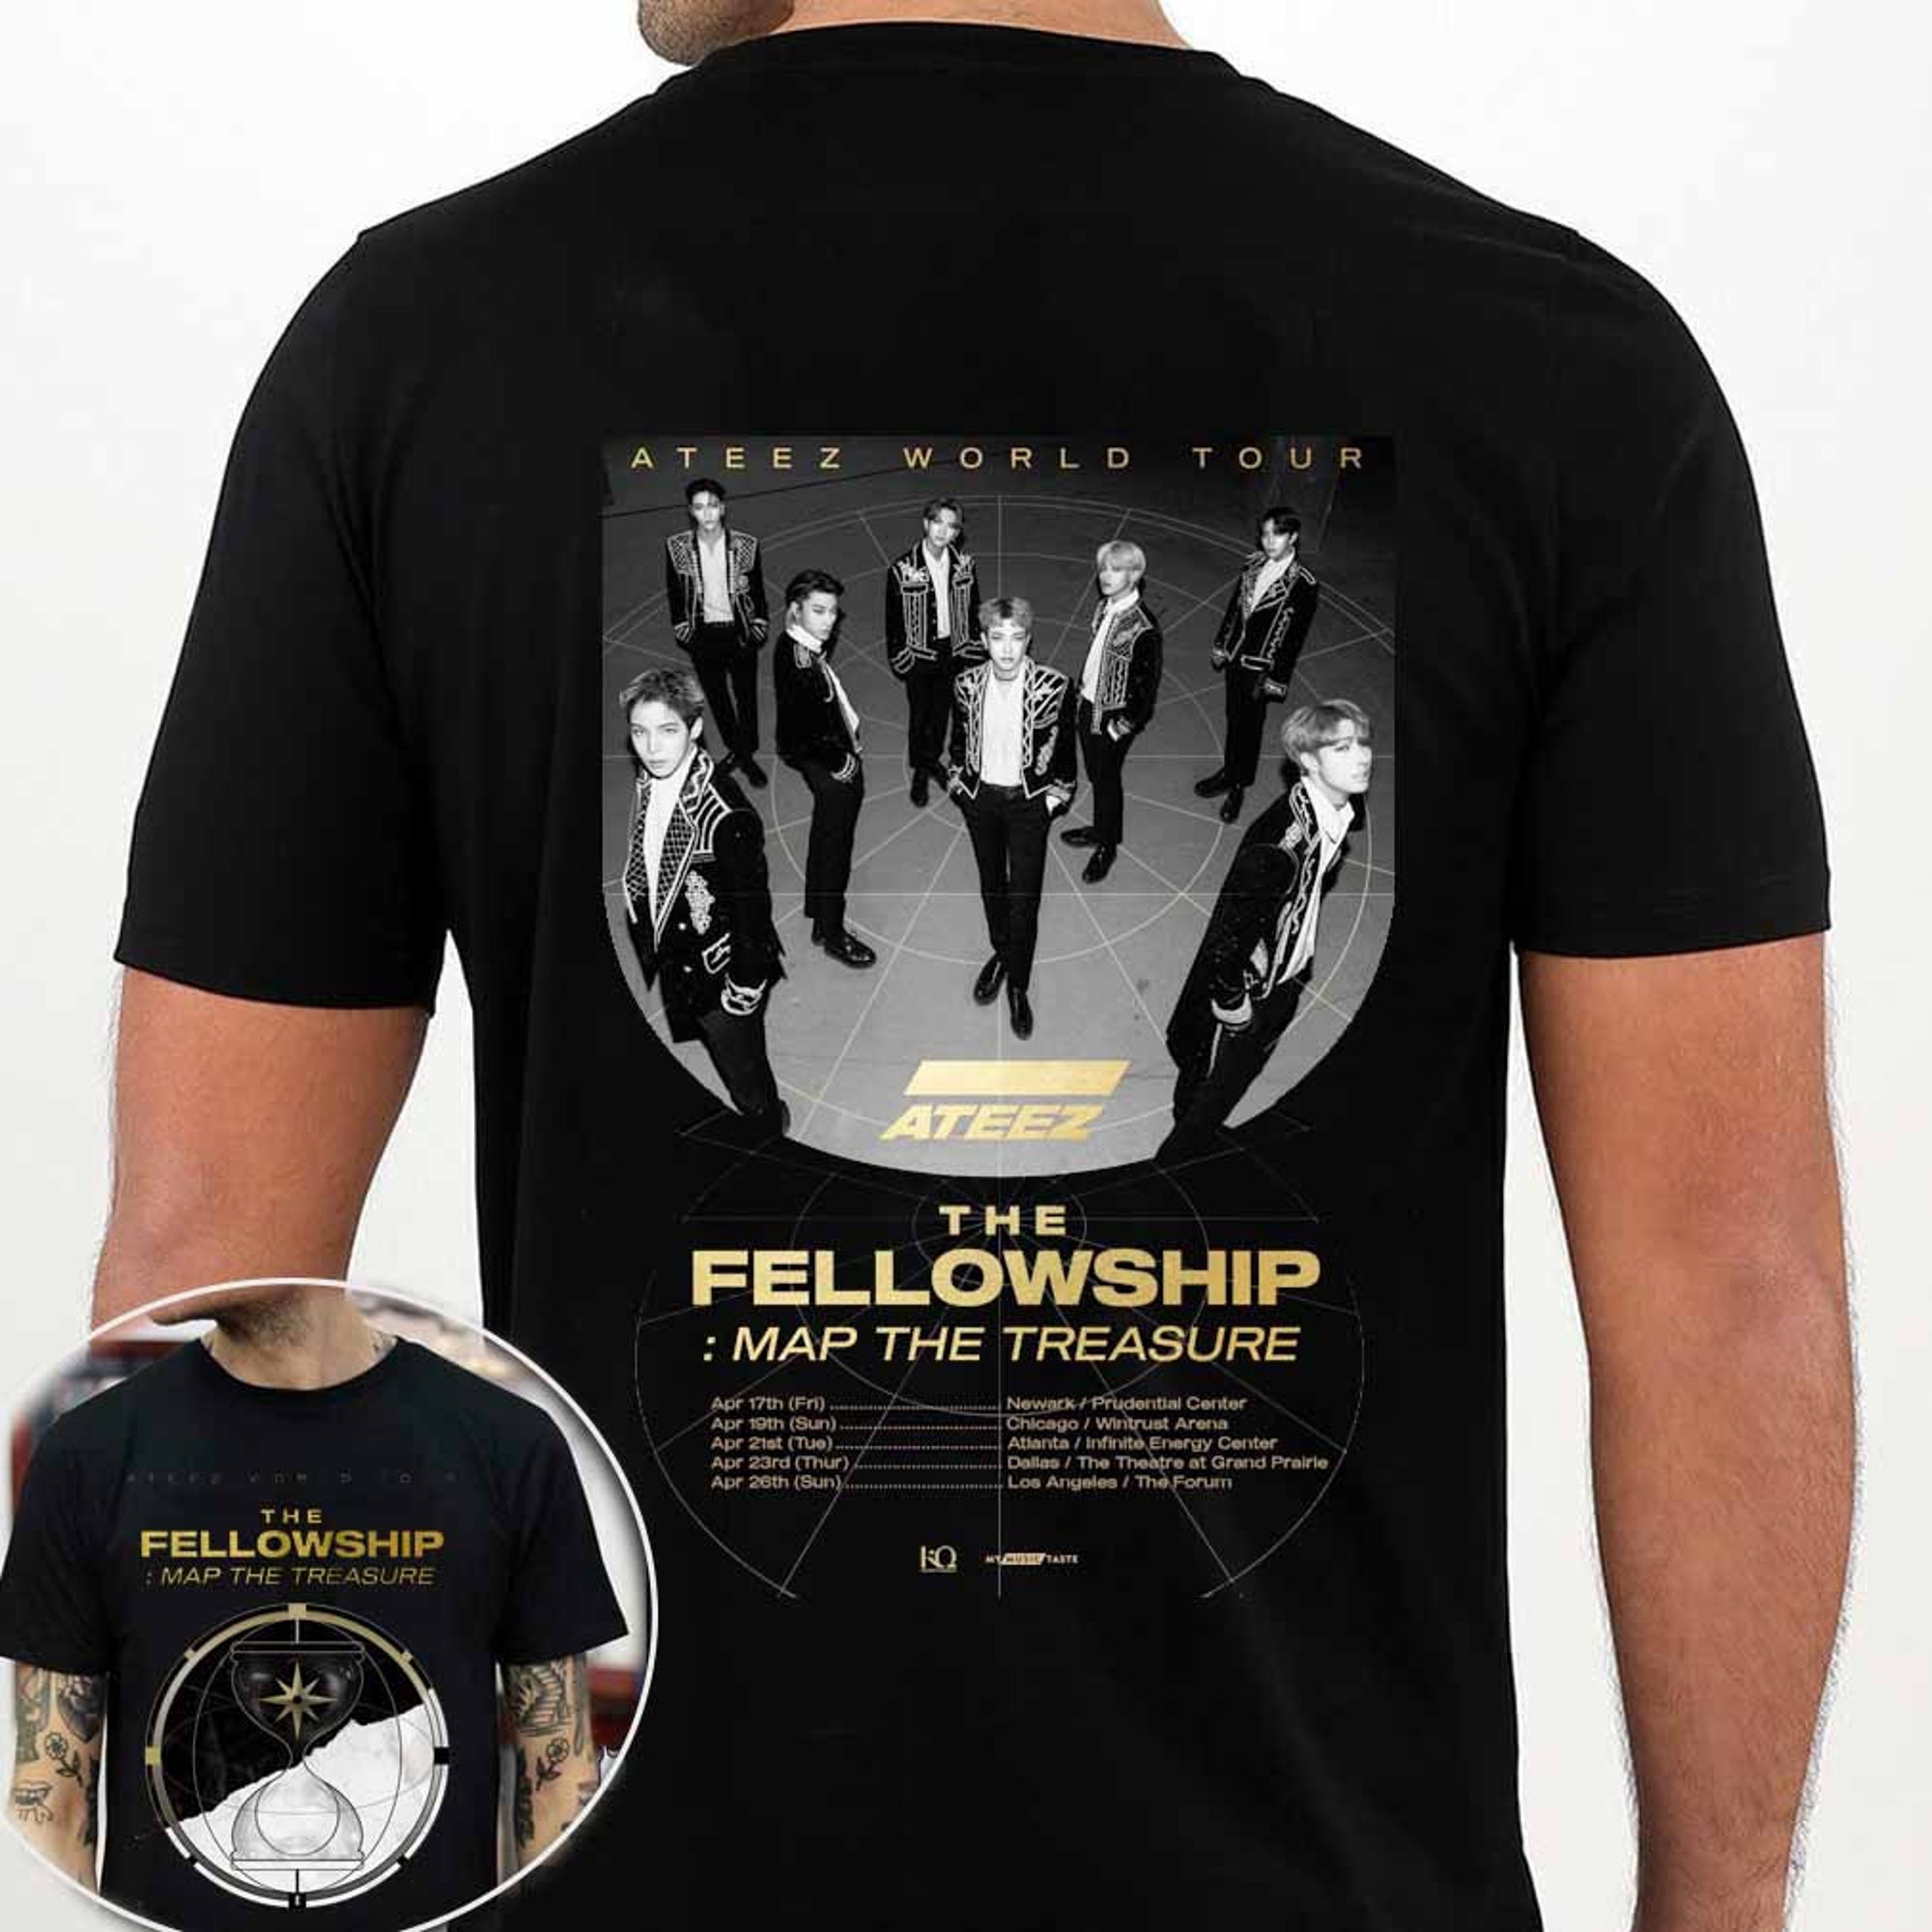 Ateez The Fellowship Tour 2022 2 sided Shirt, Ateez Concert 2022 Kpop Shirt,